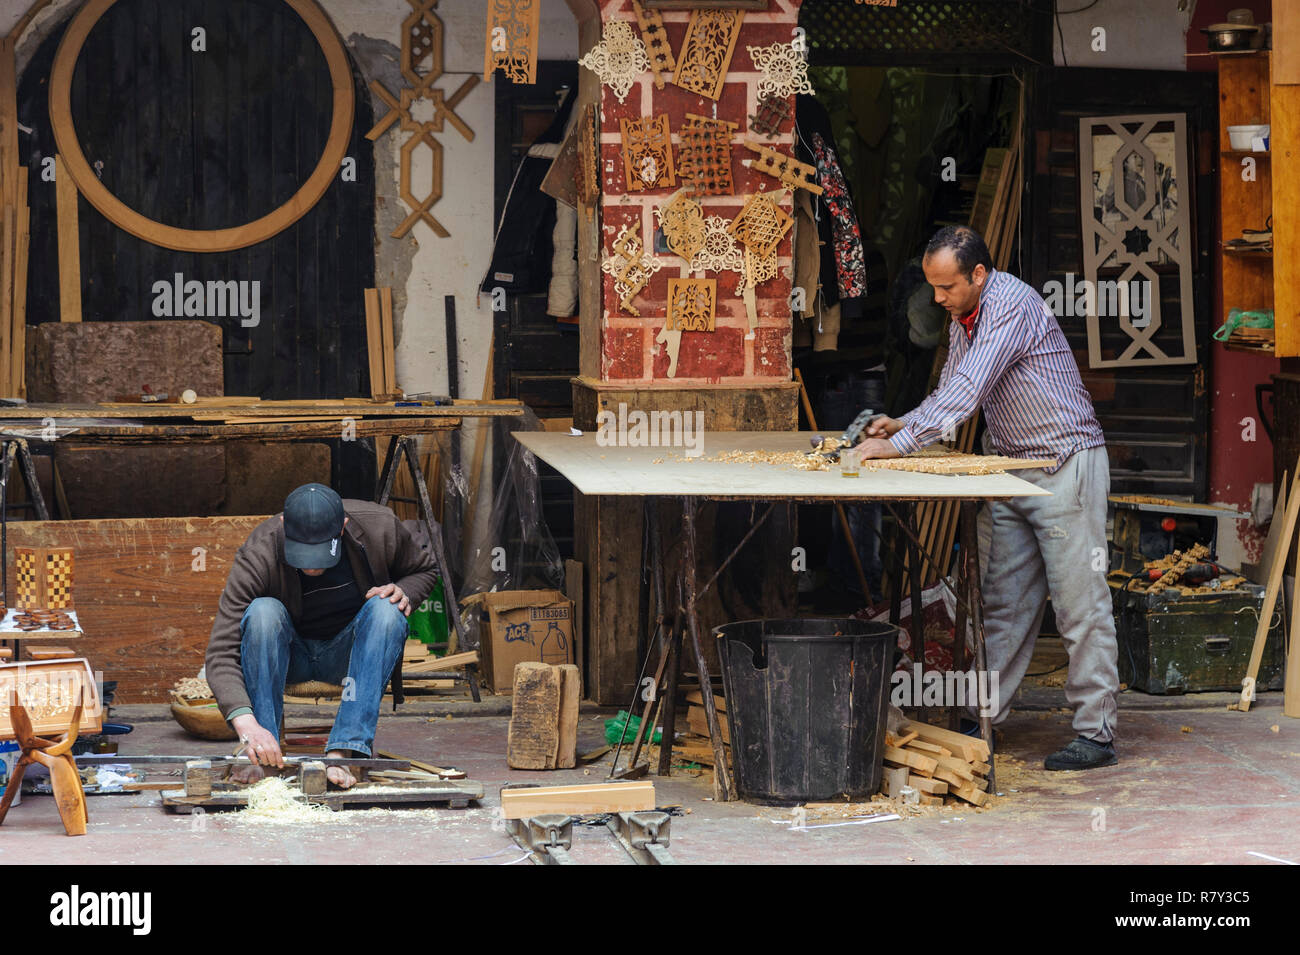 05-03-15, Marrakech, Maroc. Scène de rue dans le souk, dans la médina. Menuisiers, artisans au travail. Photo : © Simon GrossetPhoto : © Simon Grosset Banque D'Images